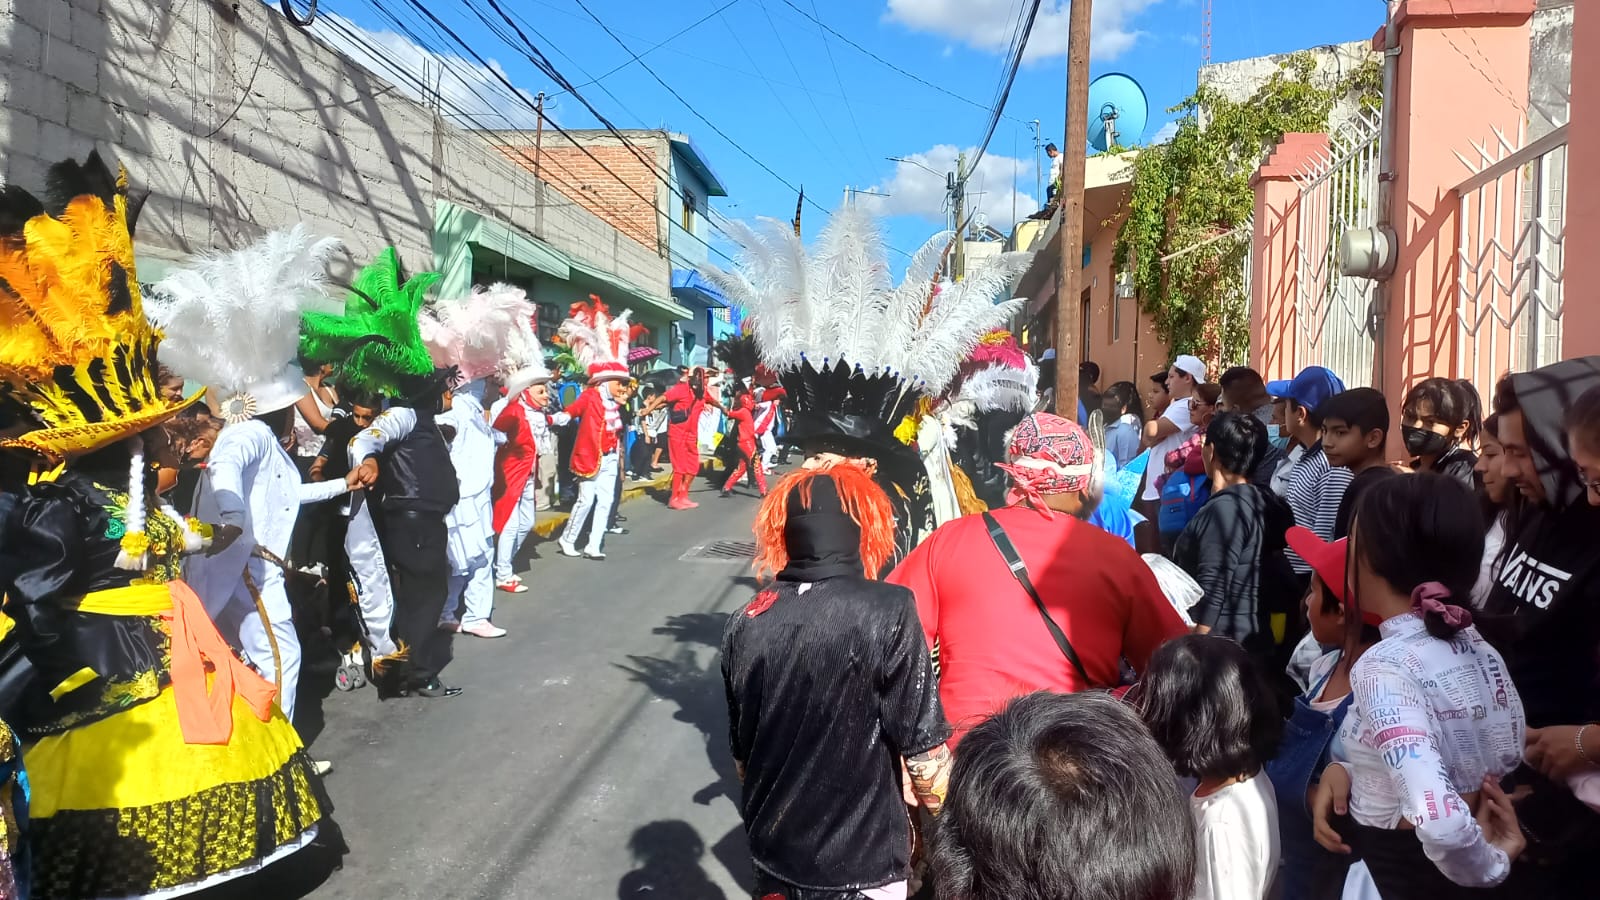 Celebraciones de huehues en Puebla Capital con saldo blanco